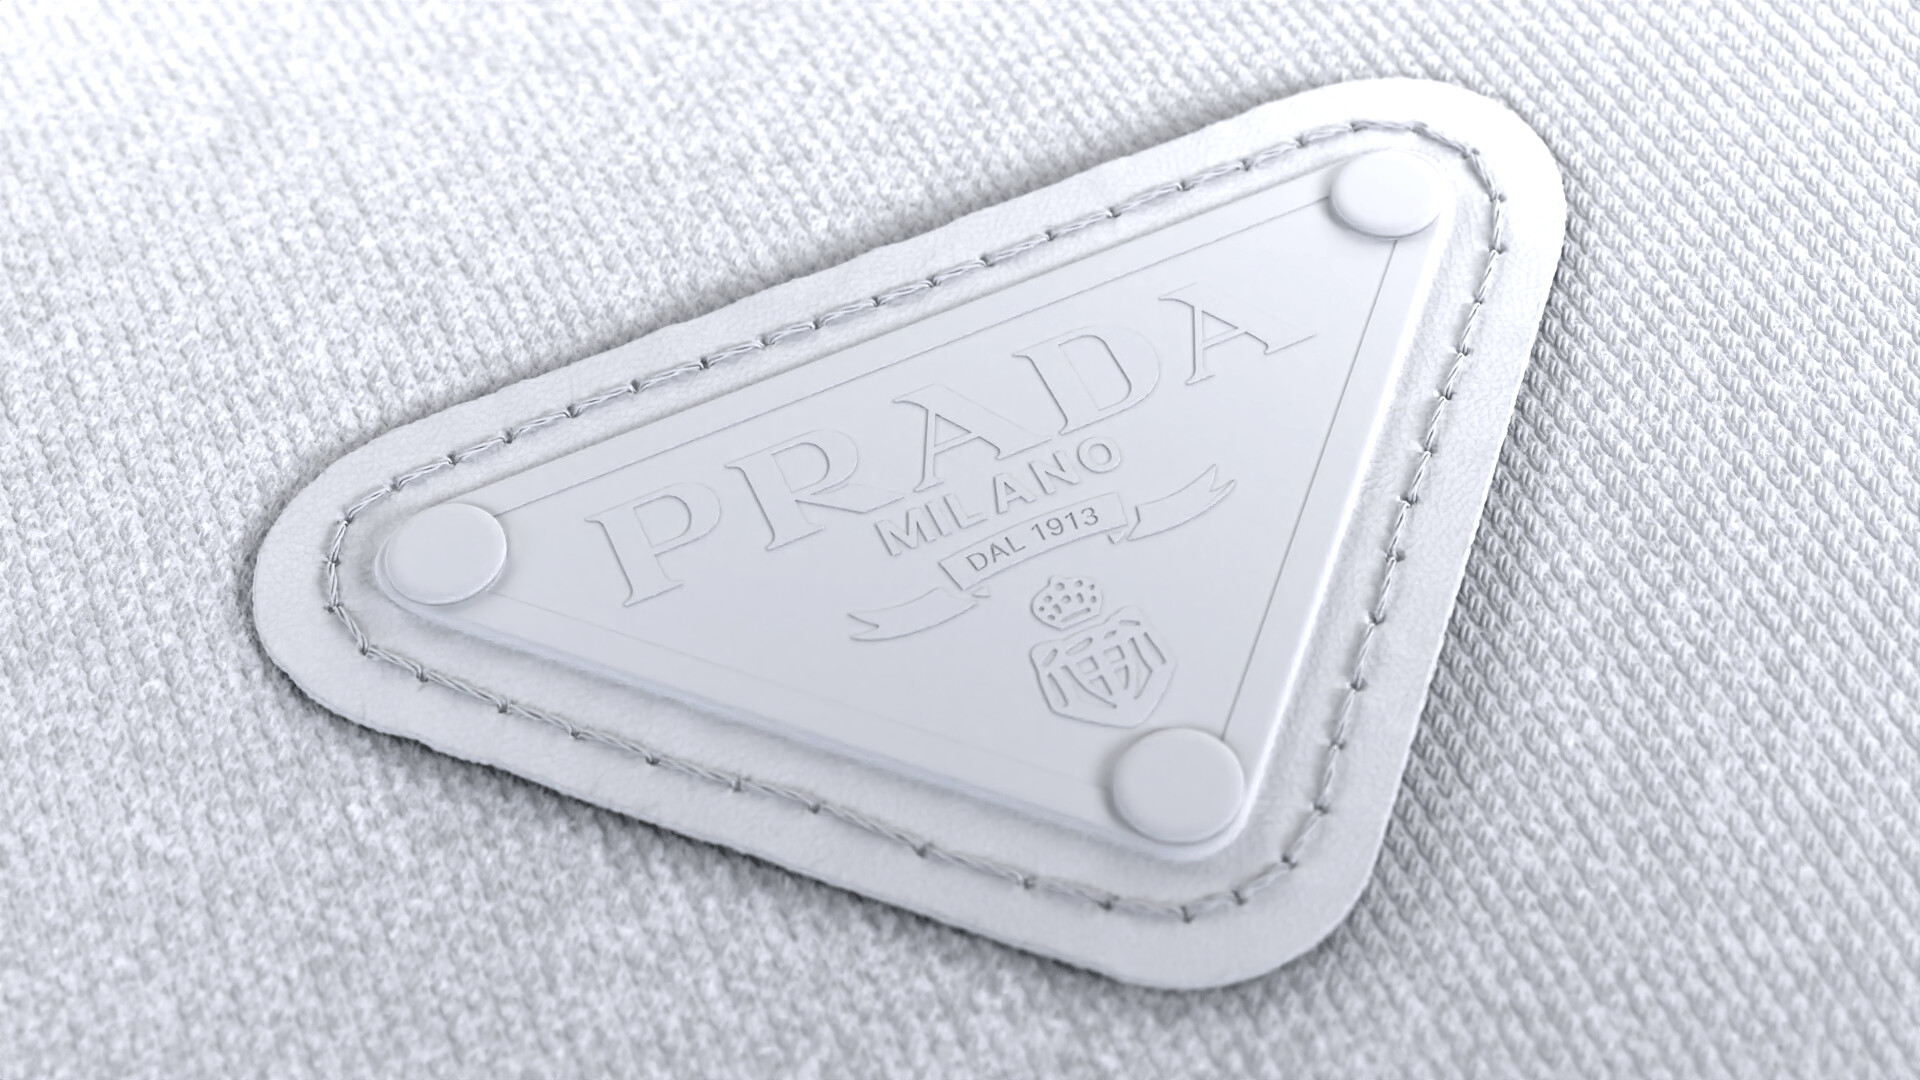 ArtStation - Prada Pocket nylon and brushed leather bag